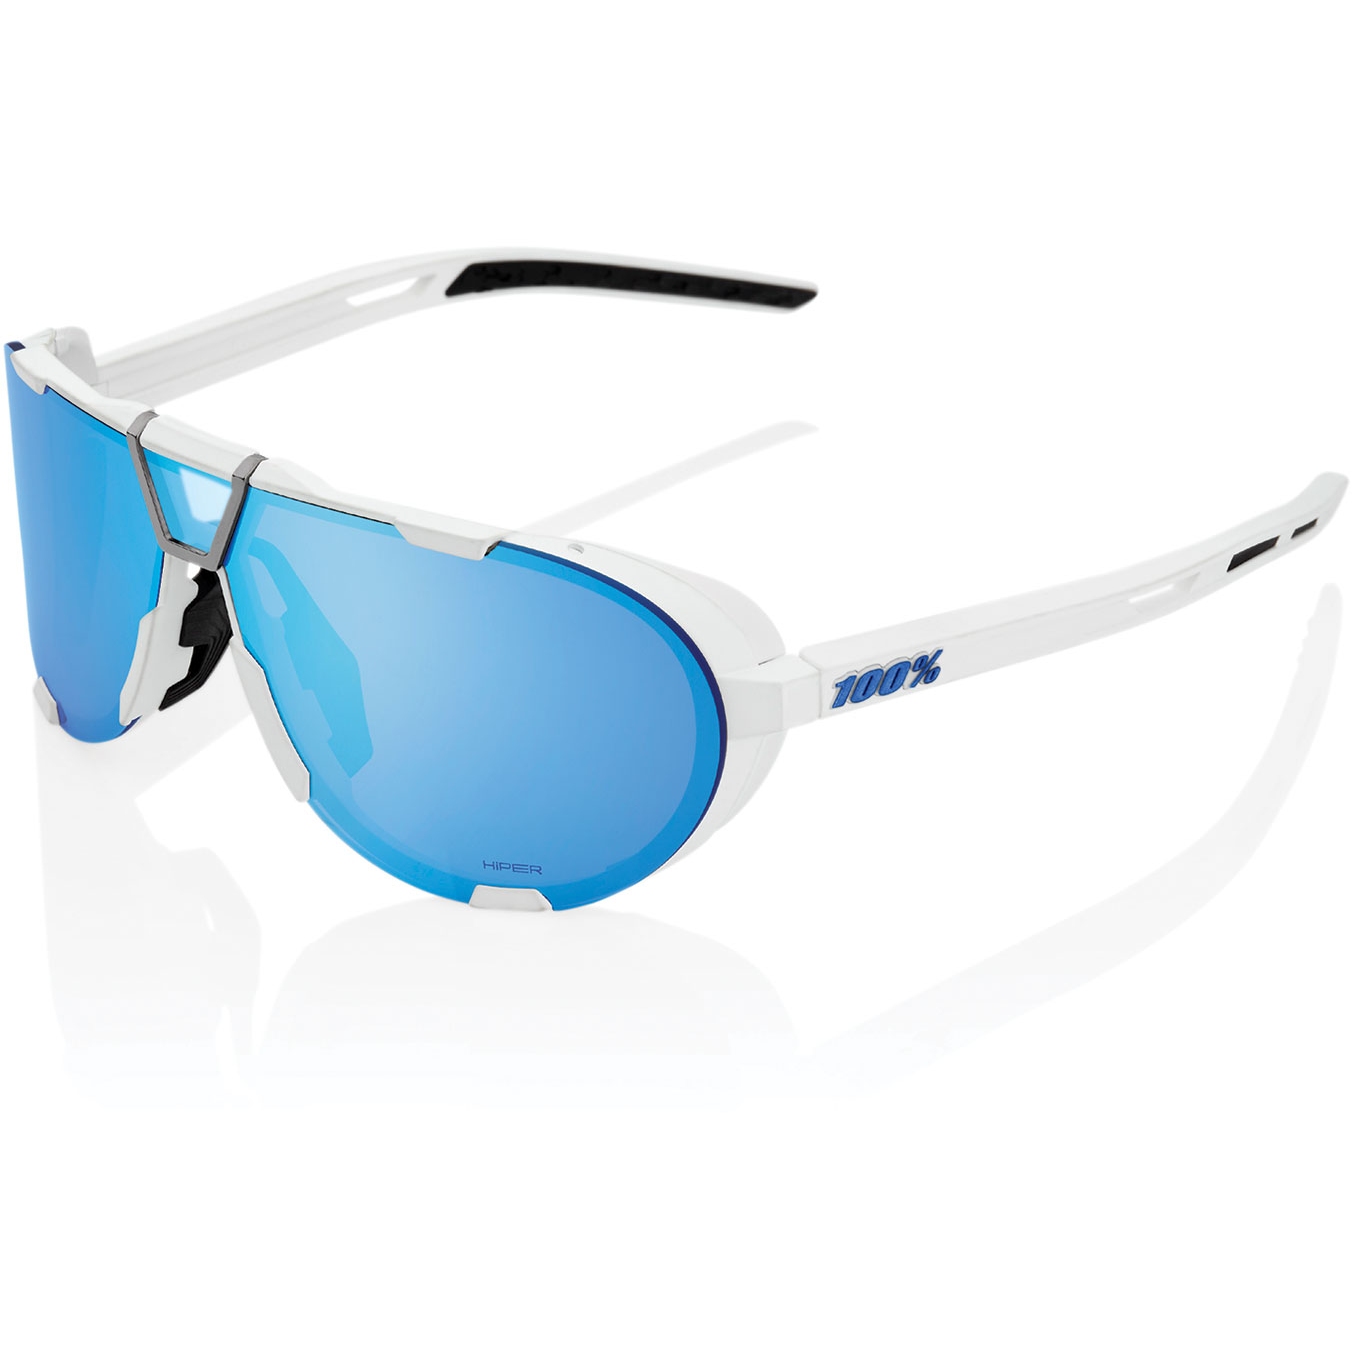 Produktbild von 100% Westcraft Brille - HiPER Mirror Lens - Soft Tact White / Blue Multilayer